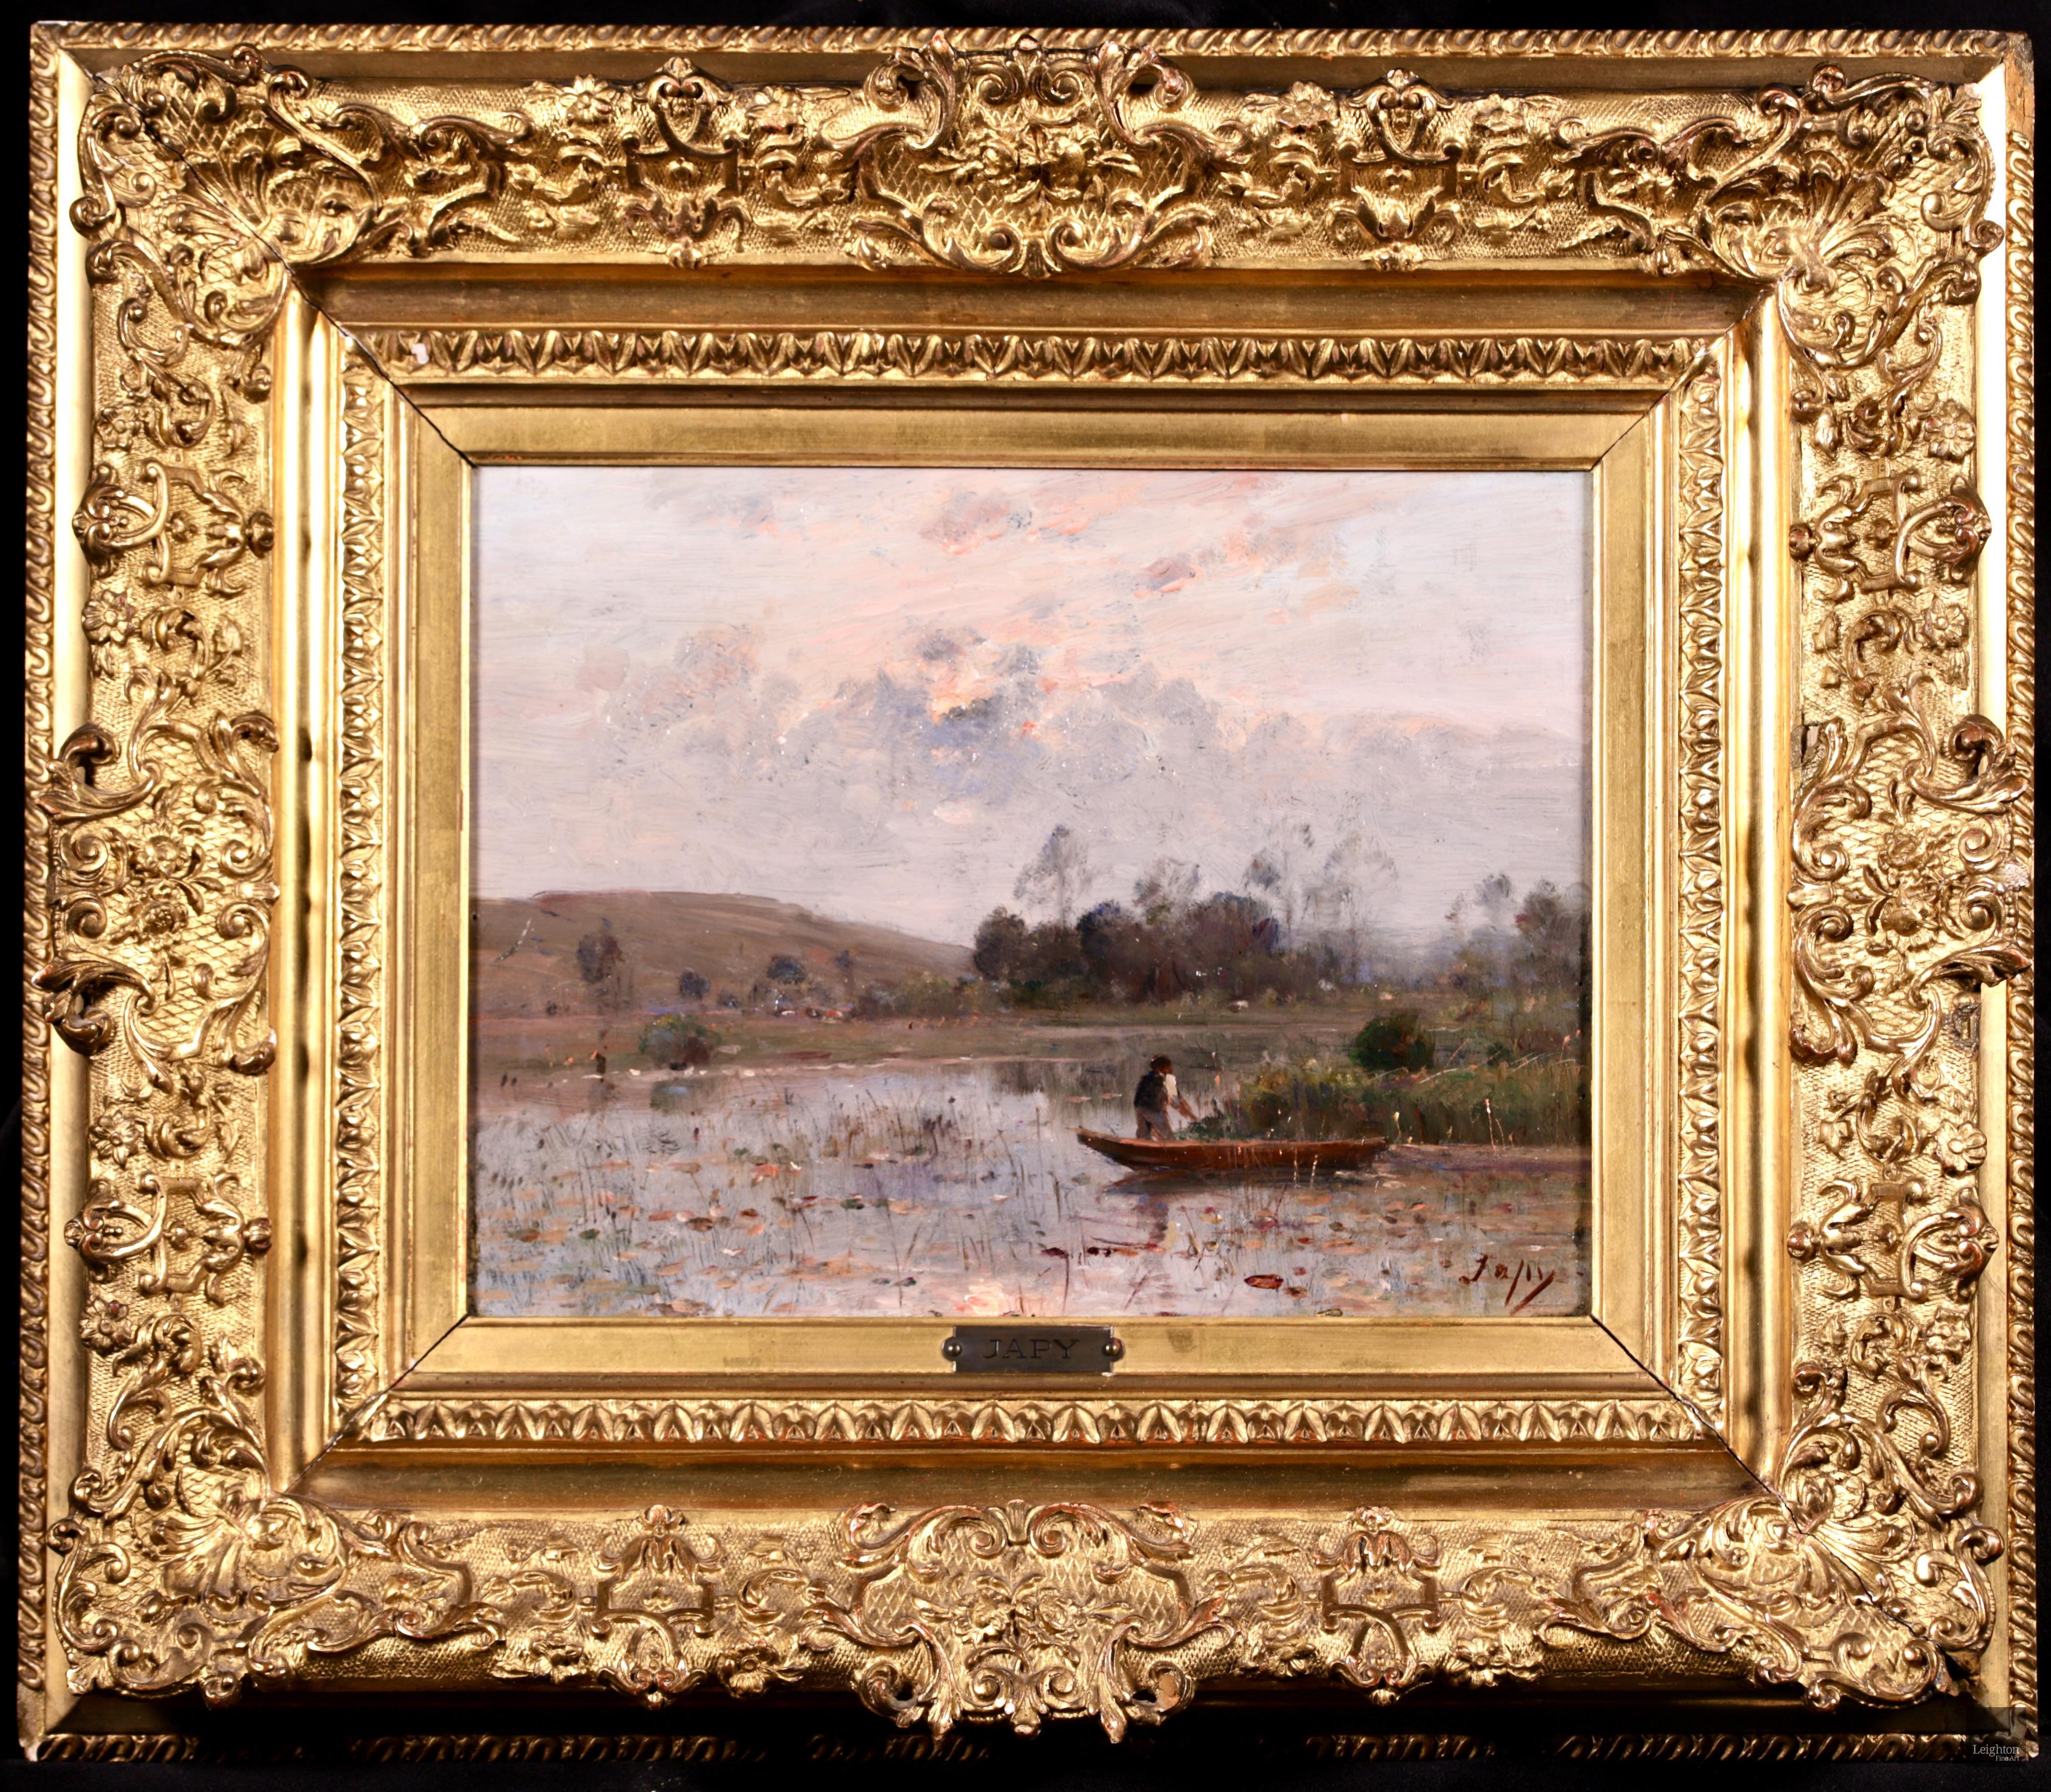 Pecheur sur une riviere - Barbizon Oil, River Landscape by Louis Aime Japy - Painting by Louis Aimé Japy